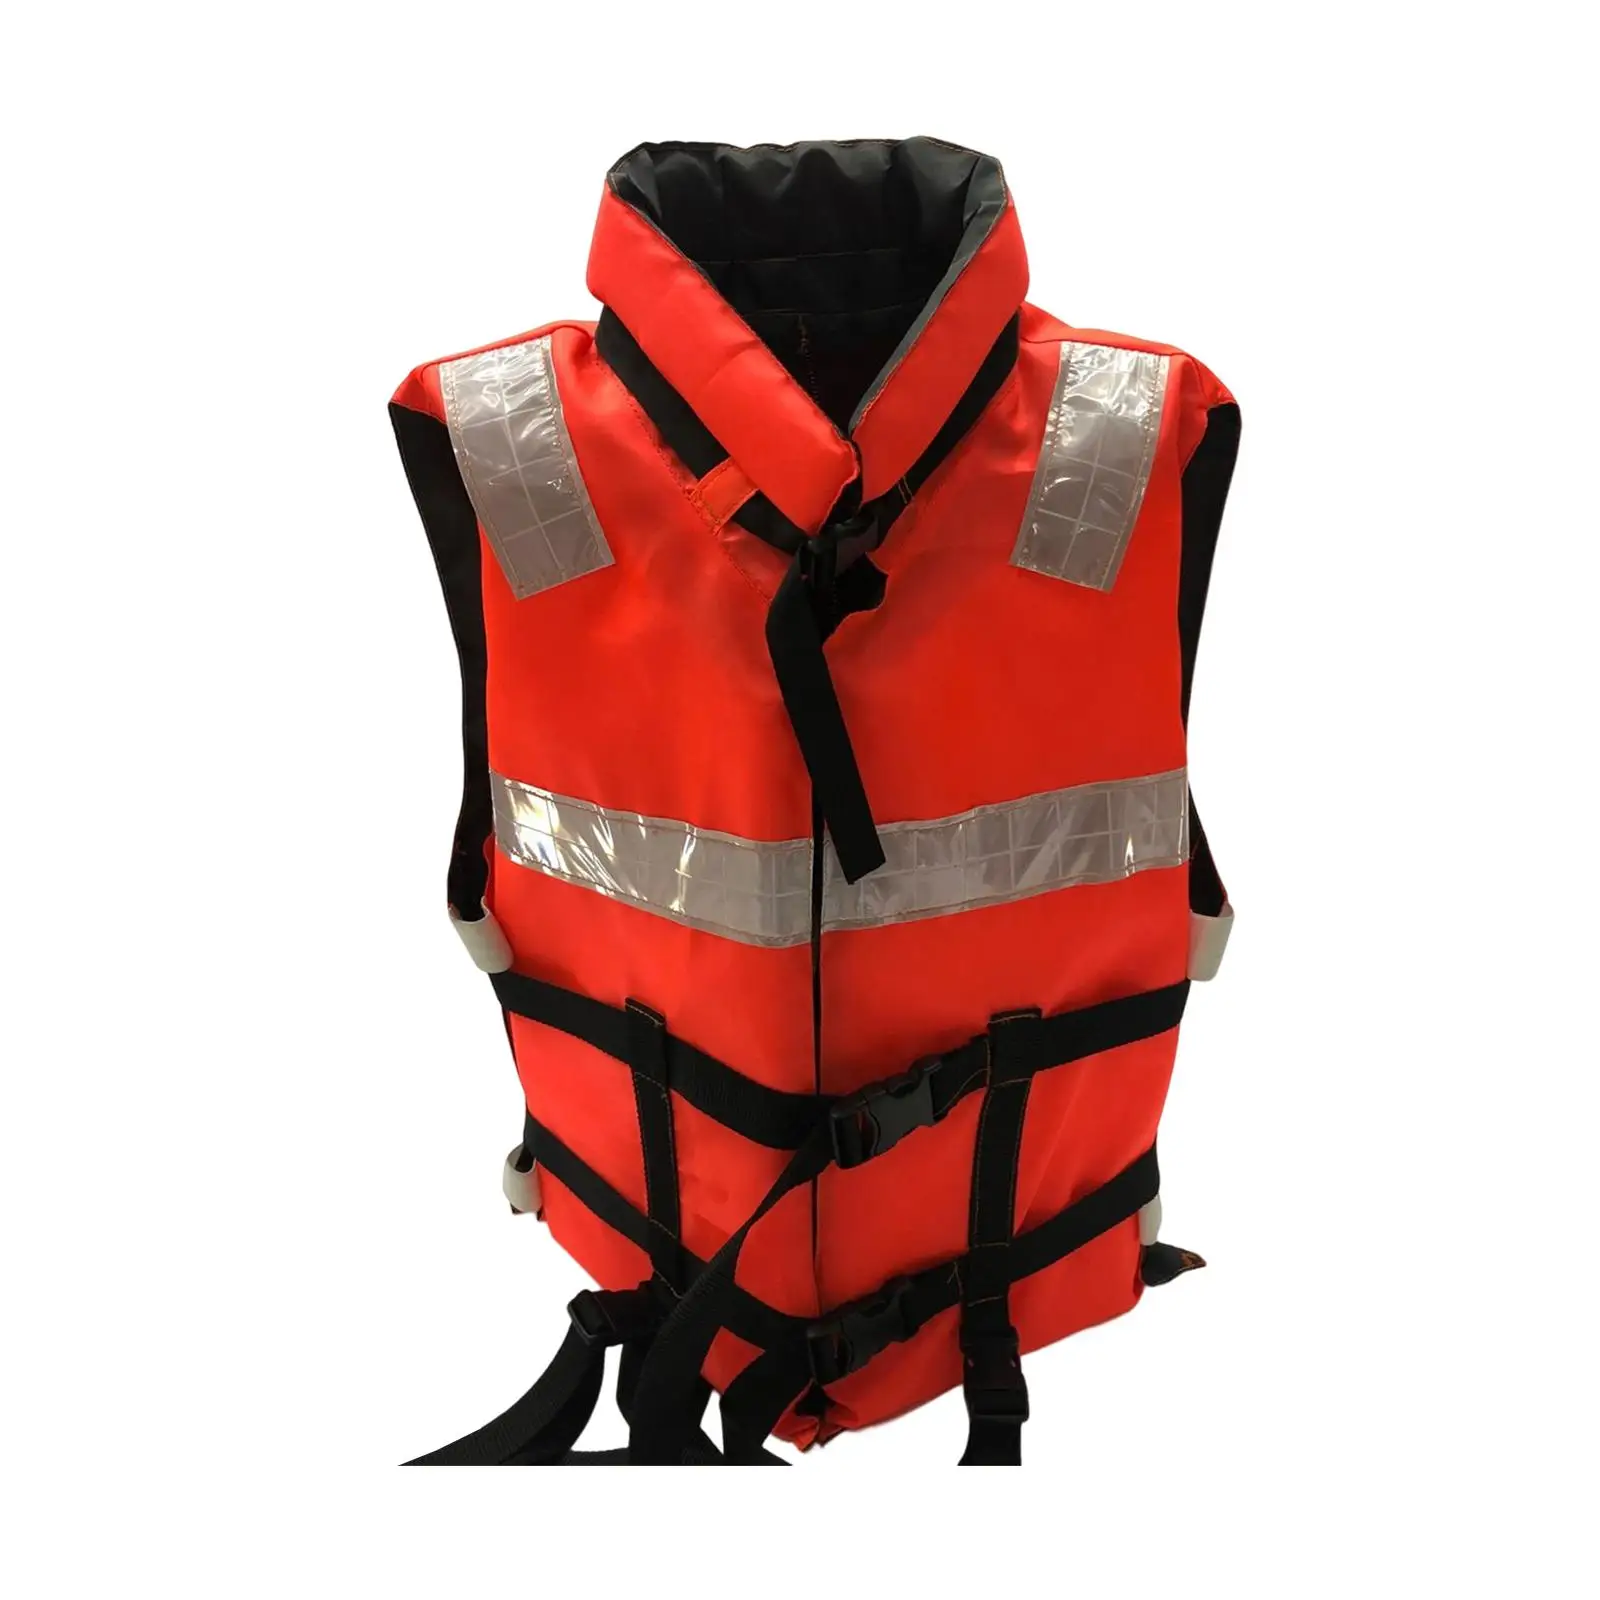 Orange Life Jackets Kayaking Paddle Board Buoyancy Aid Adjustable Elastic and Soft Fabric